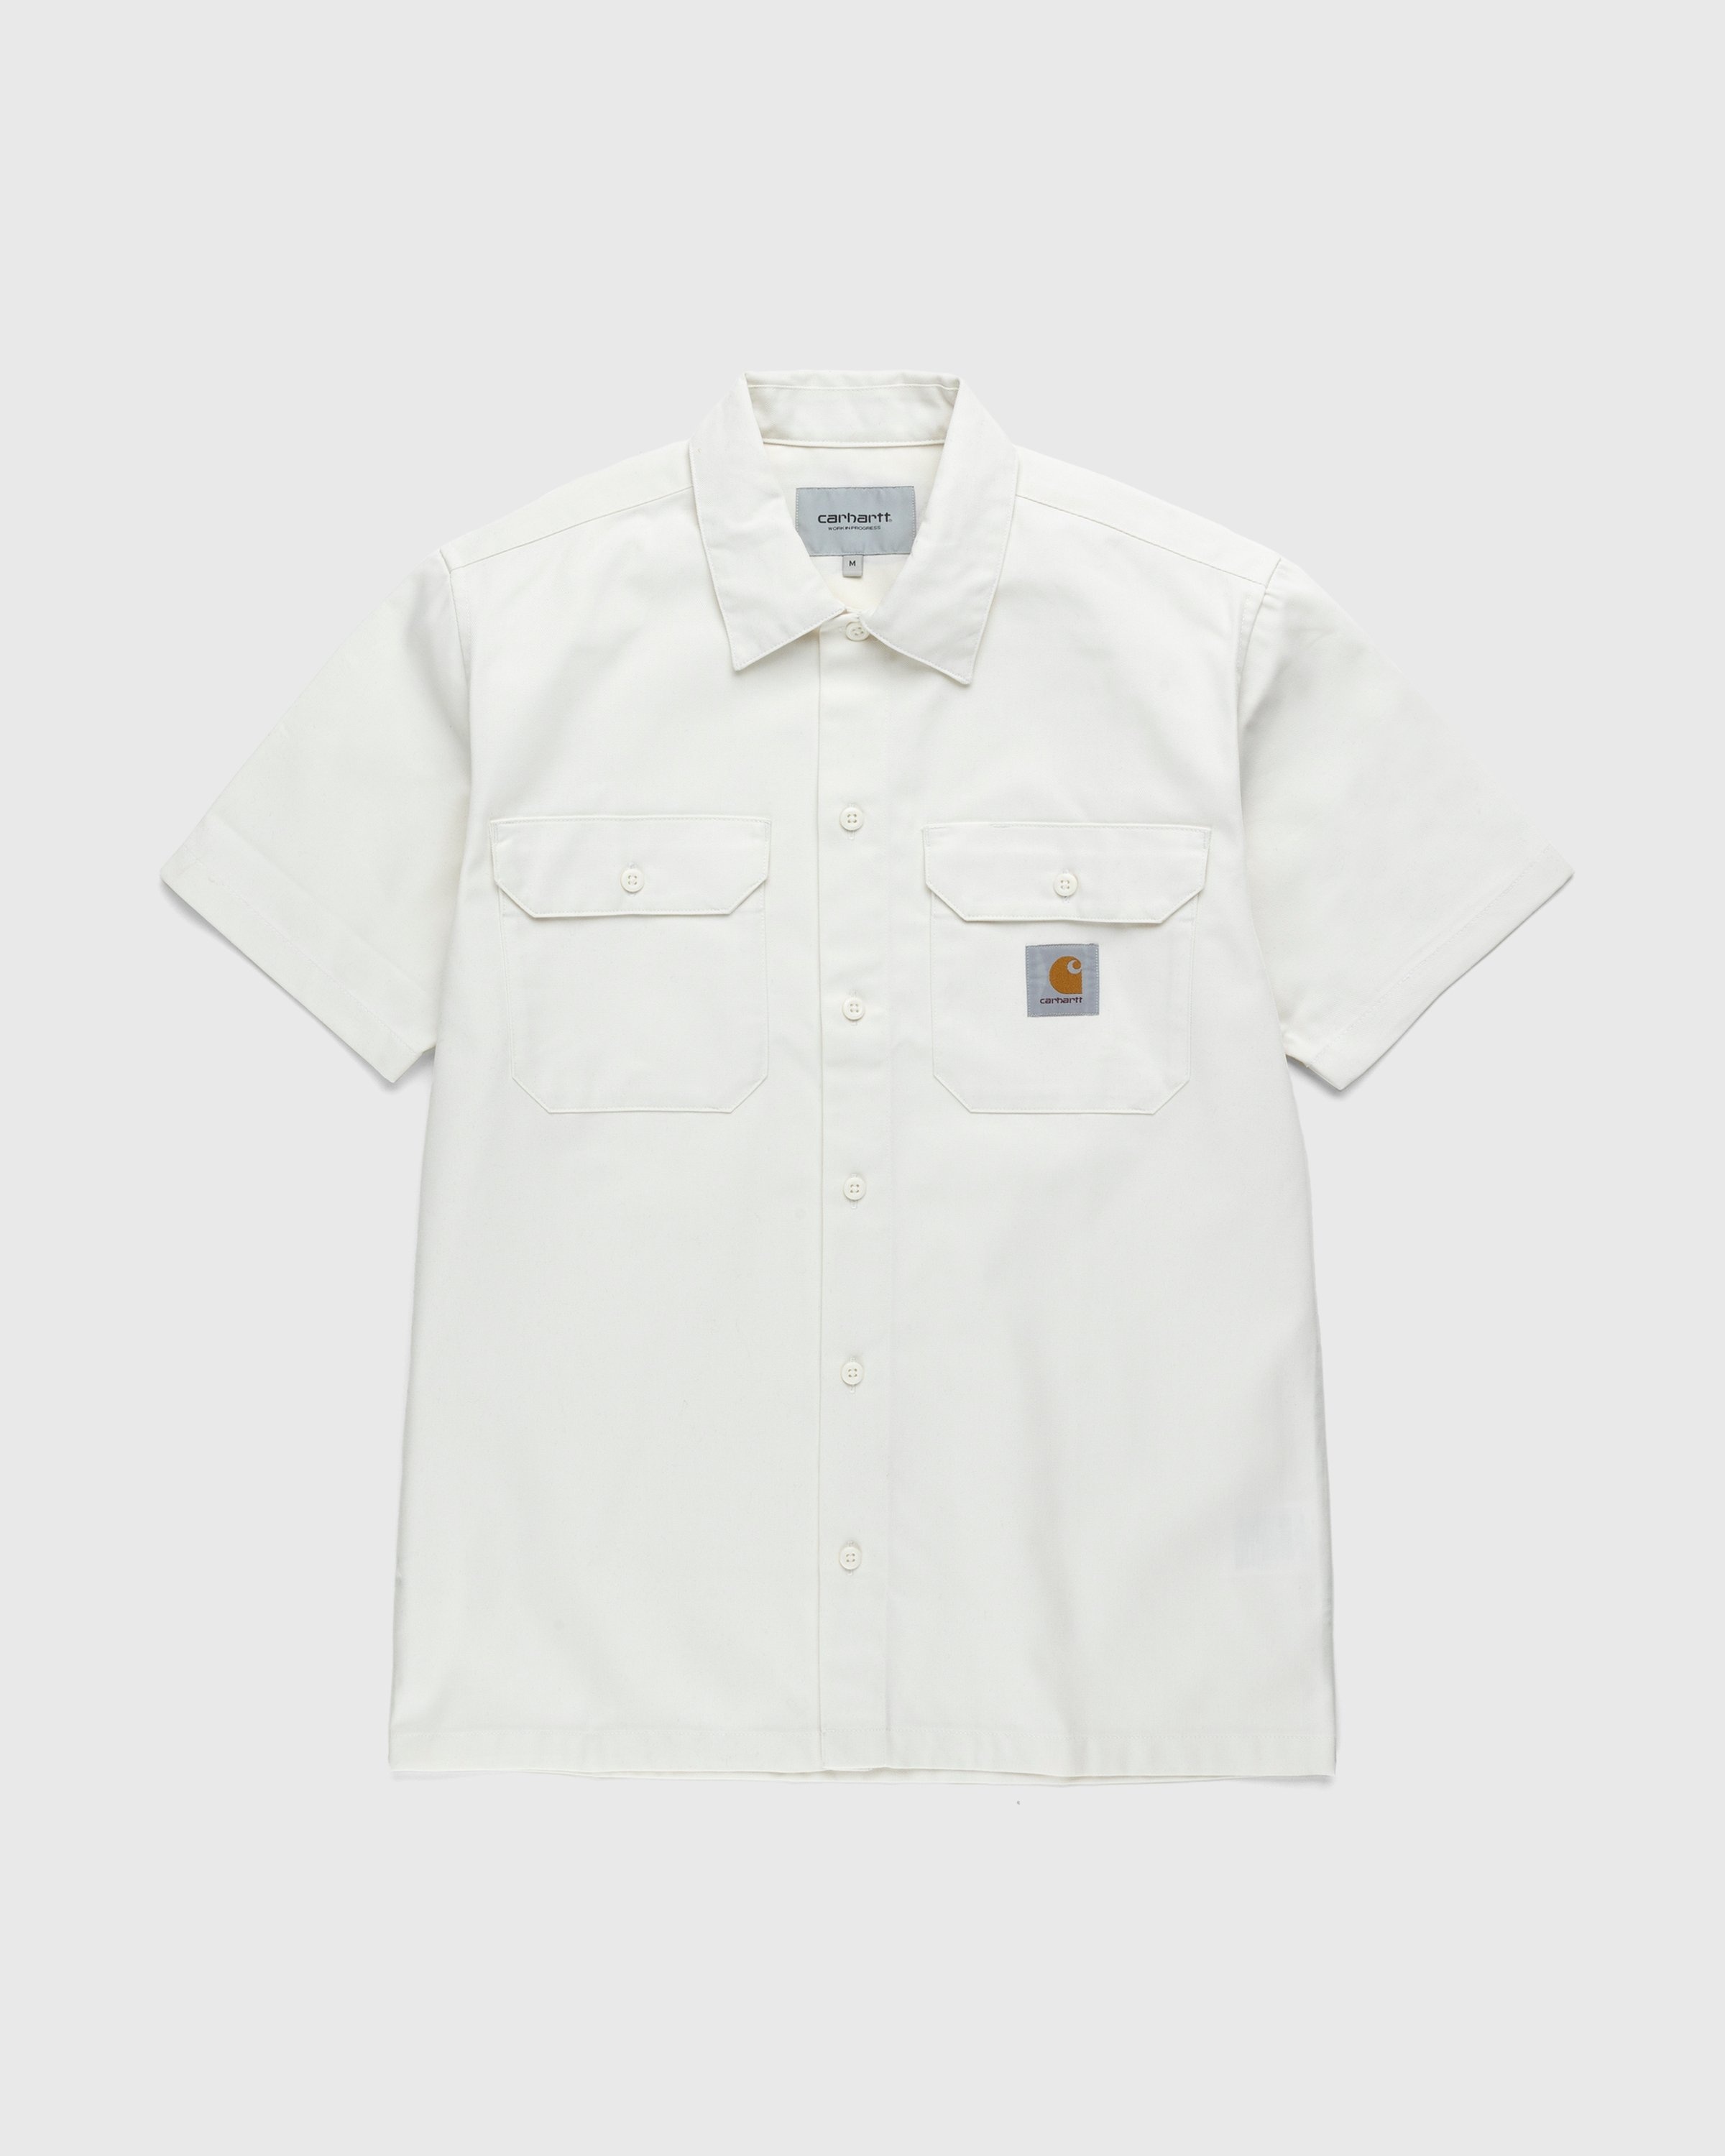 Carhartt WIP – Master Shirt Wax - Shirts - White - Image 1